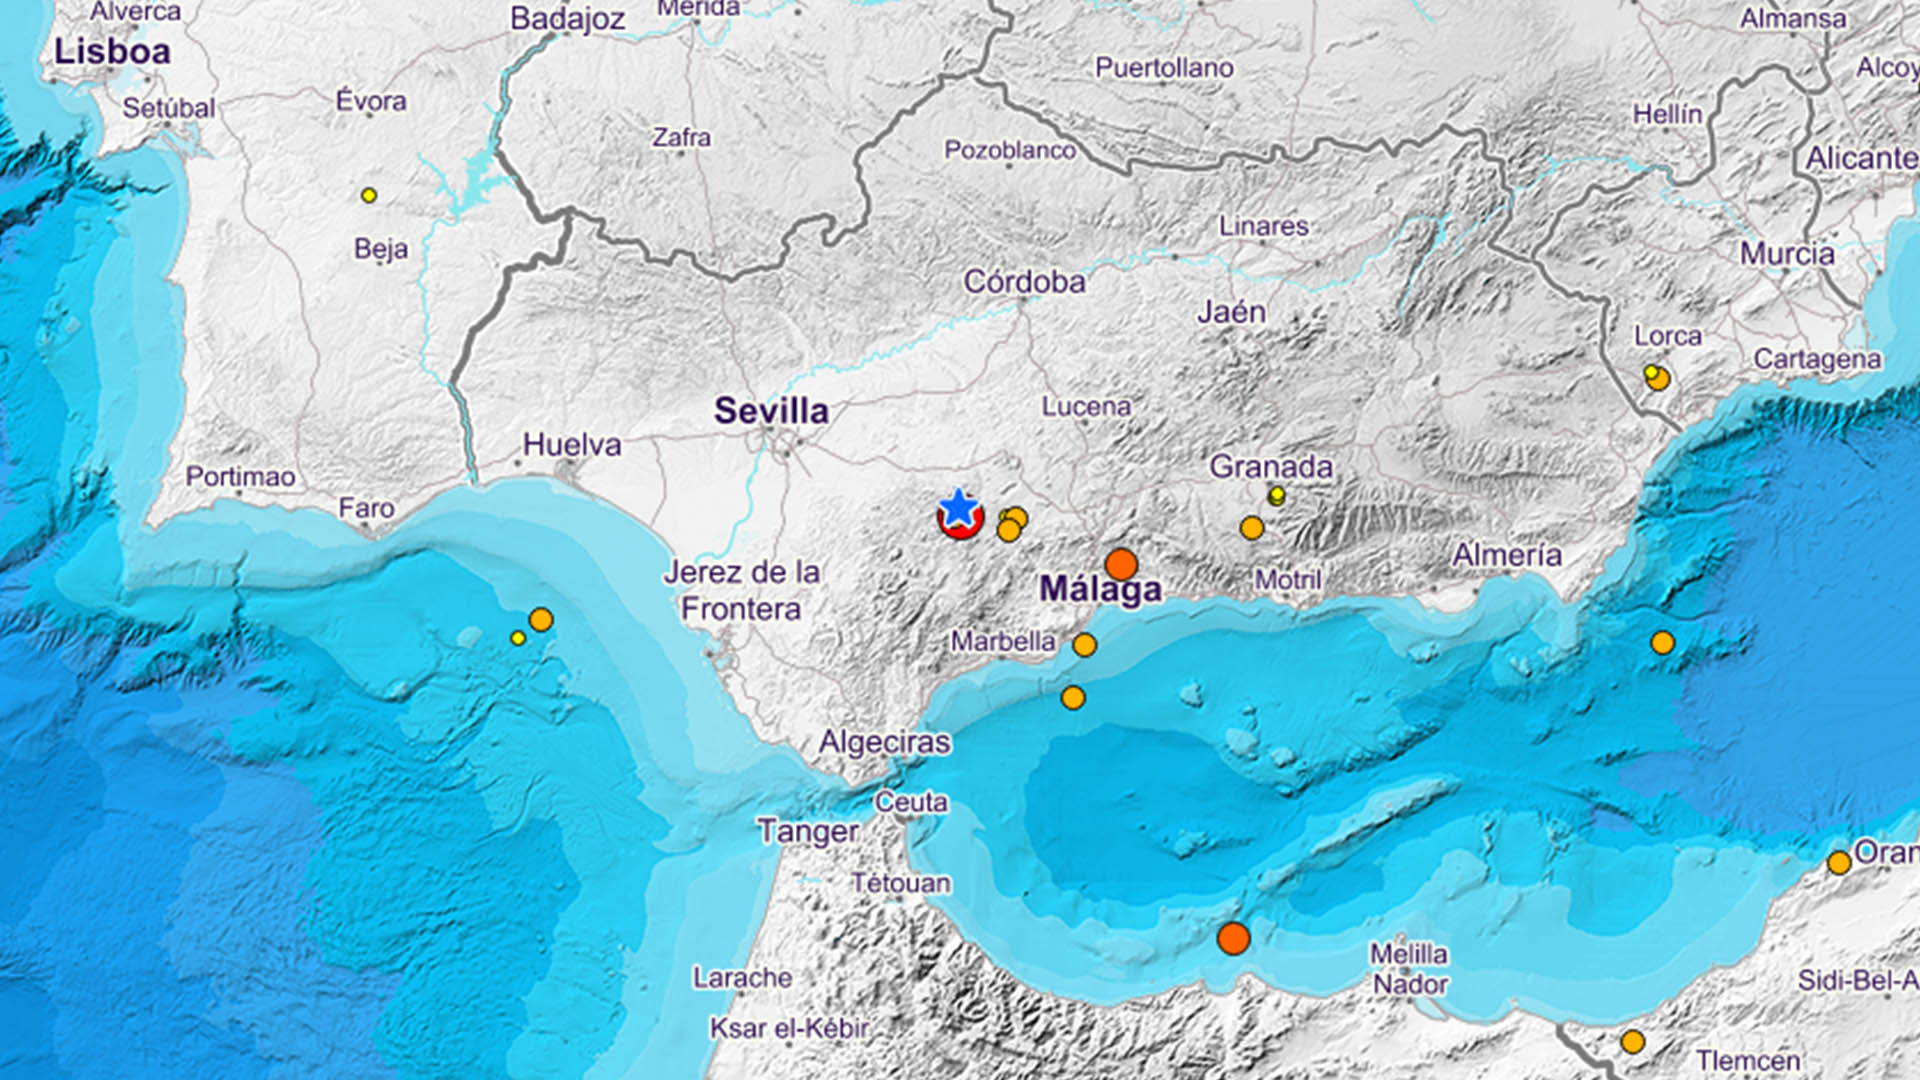 Sevilla registra un terremoto de magnitud 4,2 en la escala de Richter